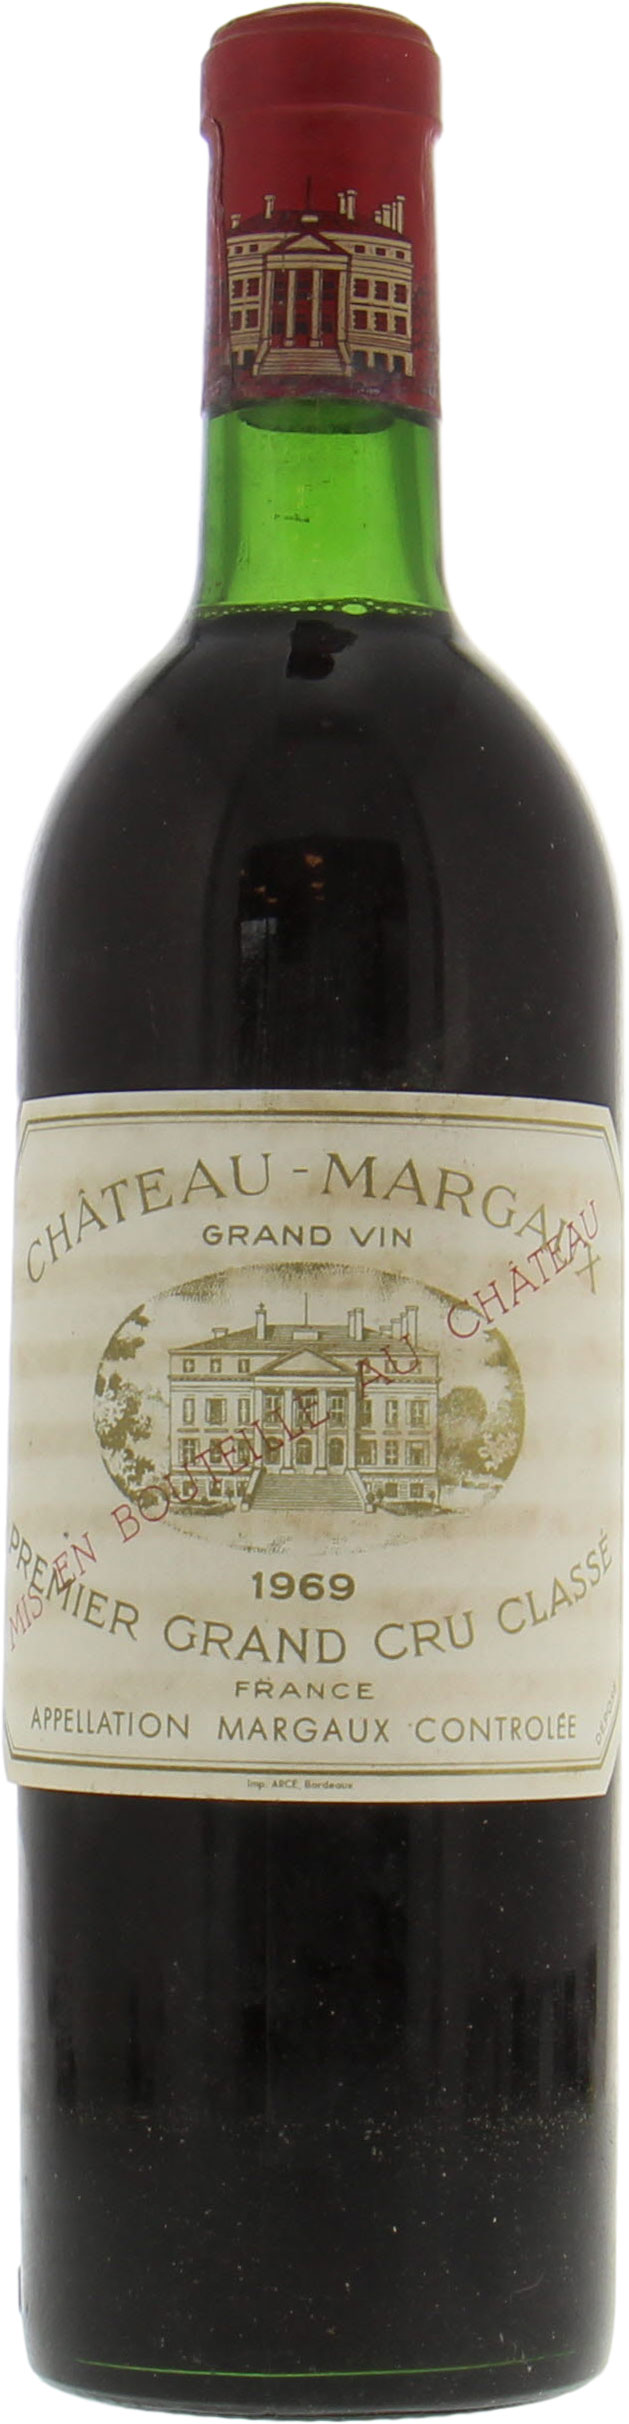 Chateau Margaux - Chateau Margaux 1969